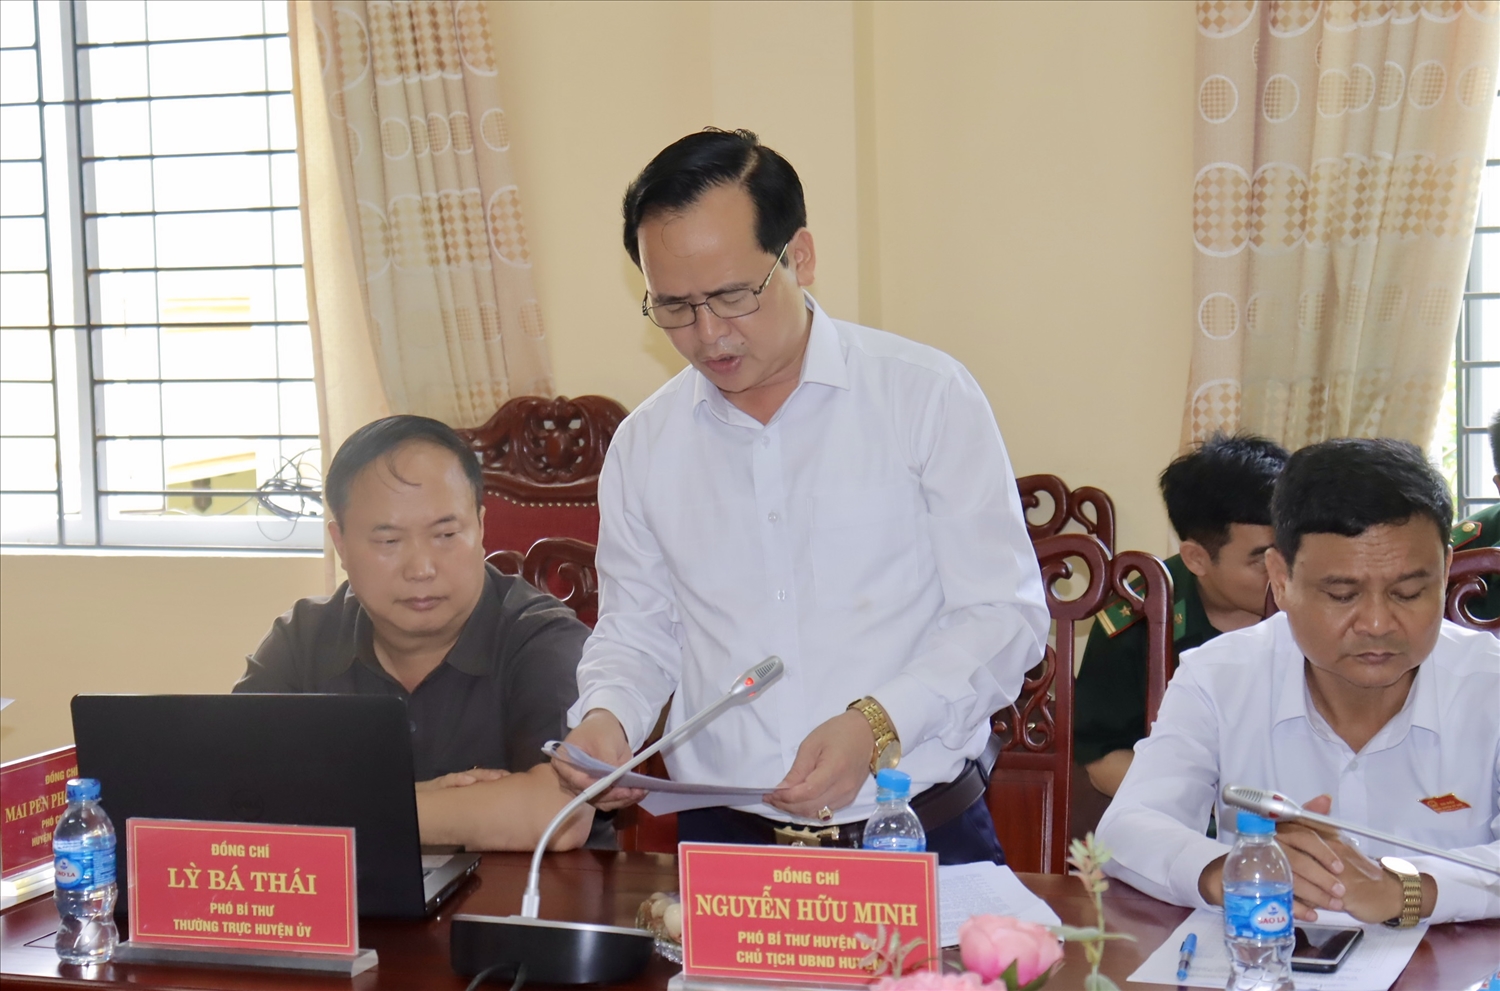 Phó Bí thư, Chủ tịch UBND huyện Kỳ Sơn Nguyễn Hữu Minh báo cáo tình hình kinh tế - xã hội, quốc phòng, an ninh của huyện Kỳ Sơn tại Hội nghị 